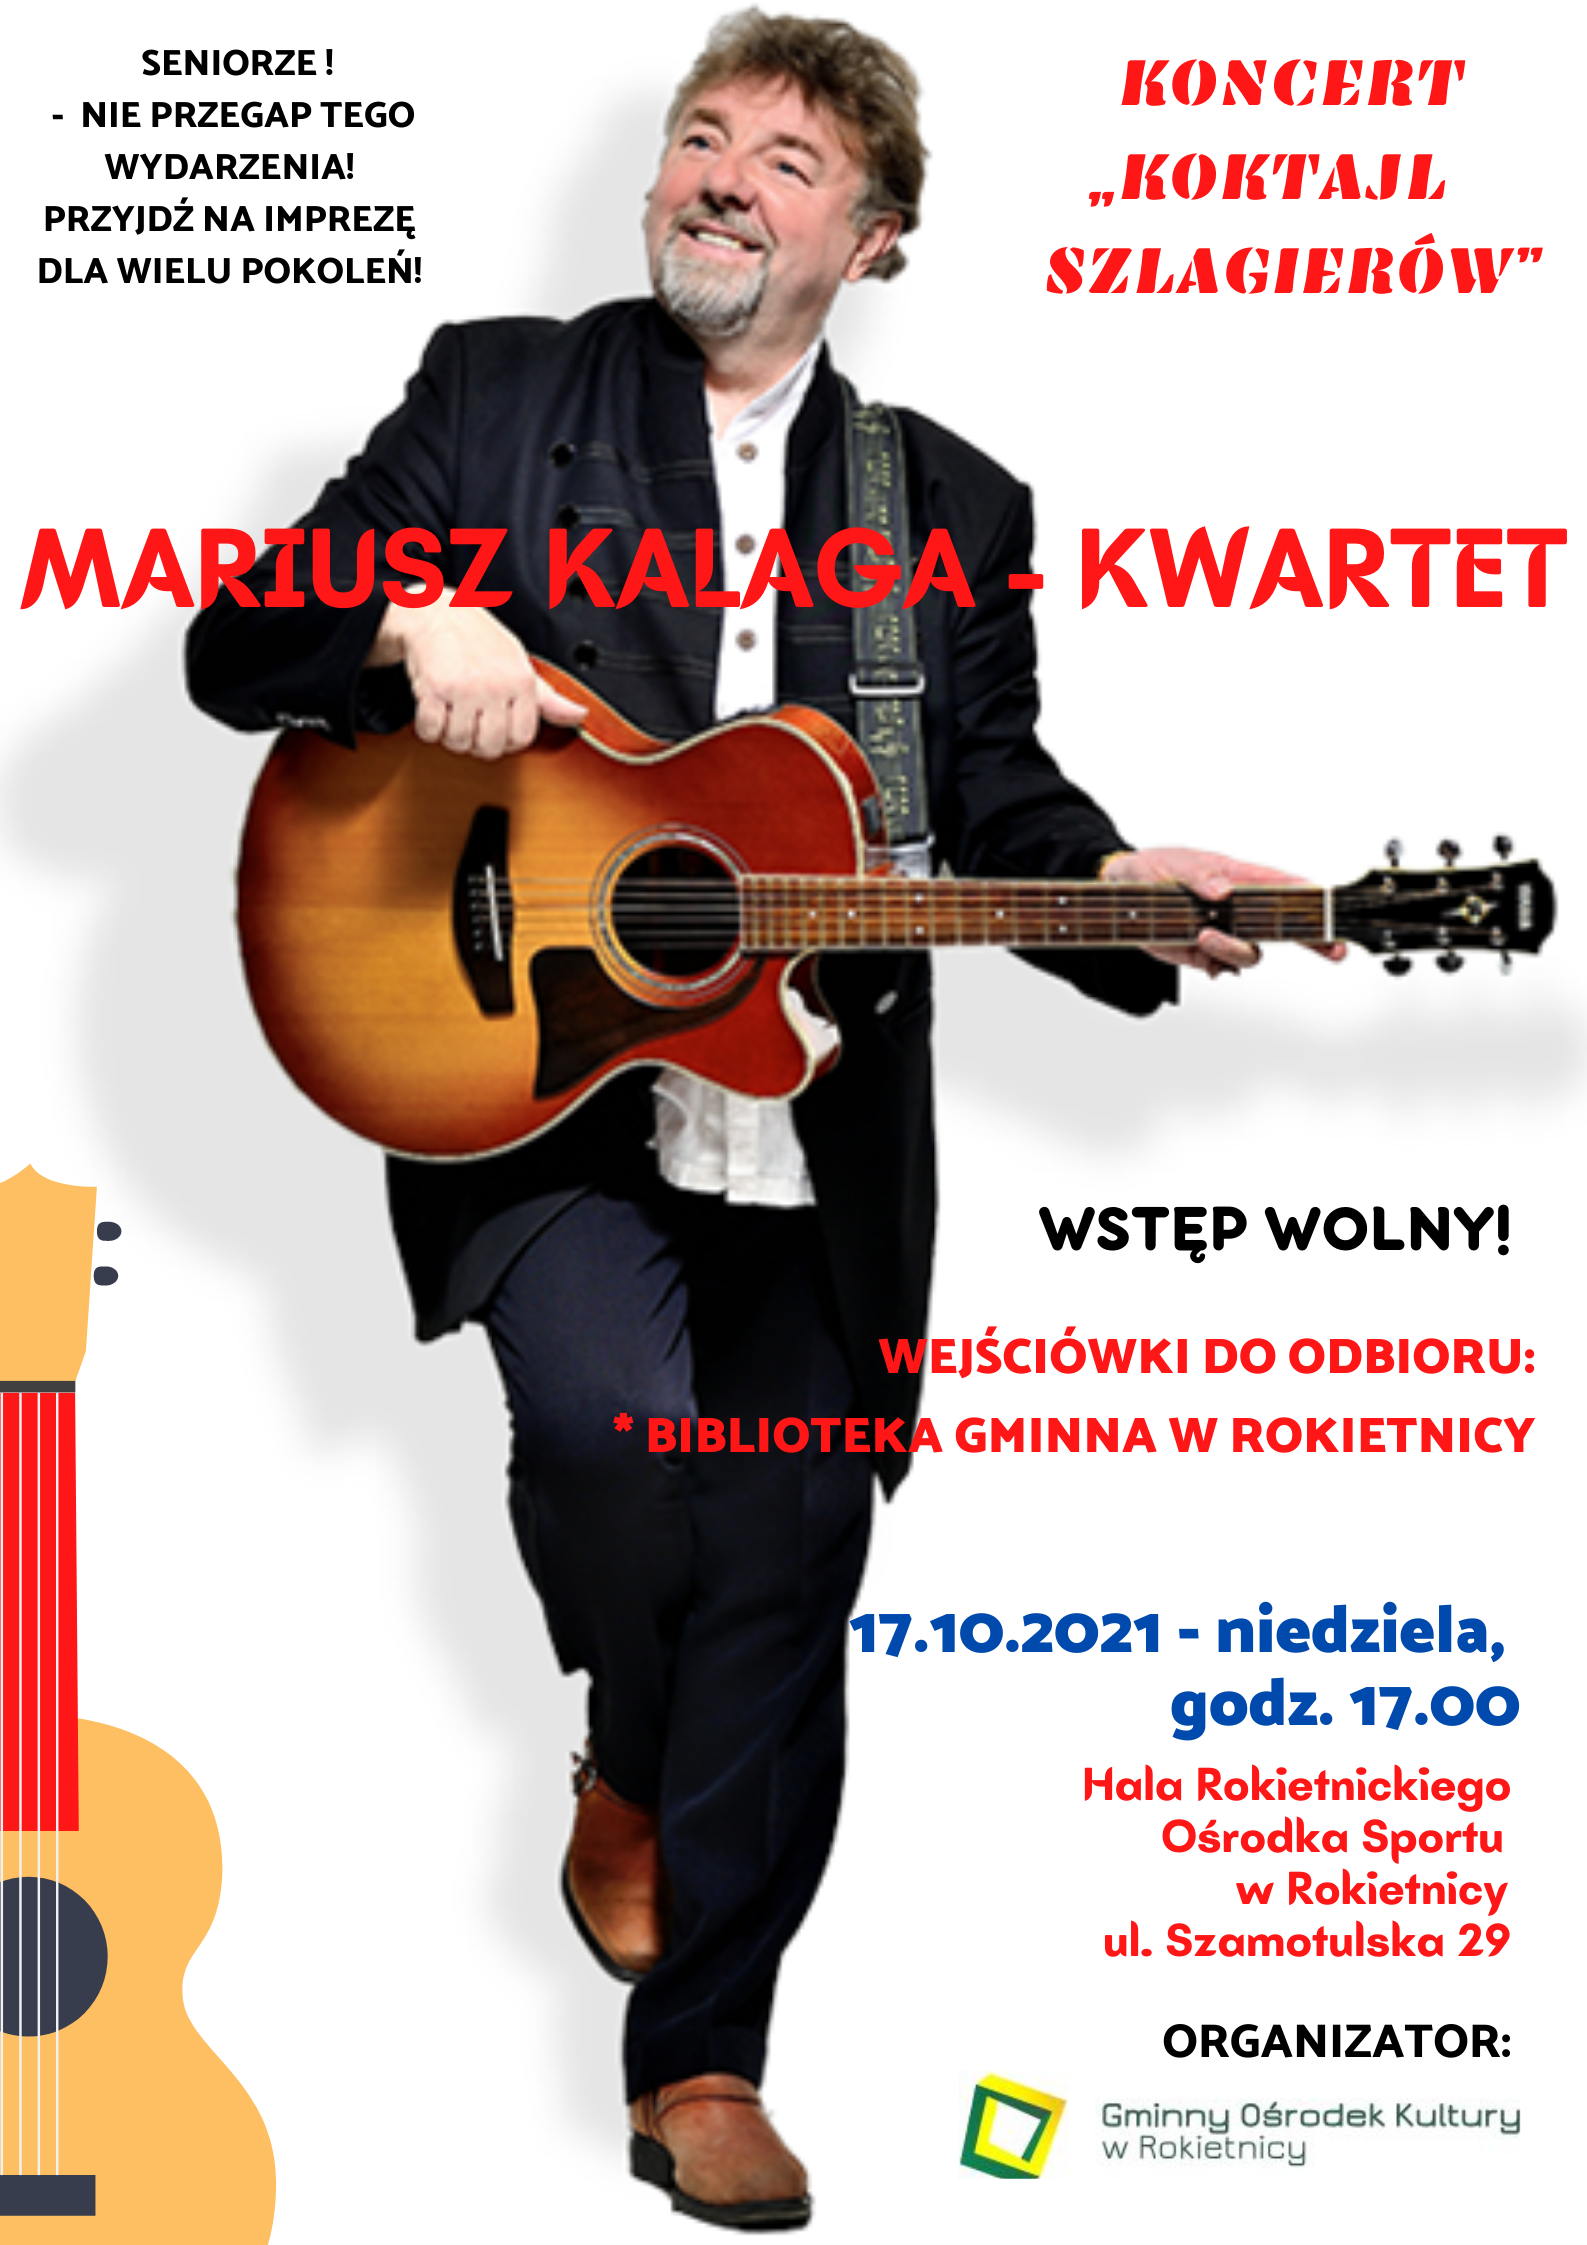 Na plakacie na białym tle zdjęcie Mariusza Kalagi z gitarą w ręku, patrzącego w prawo. SENIORZE! - NIE PRZEGAP TEGO WYDARZENIA! PRZYJDŹ NA IMPREZĘ DLA WIELU POKOLEŃ! KONCERT "KOKTAJL SZLAGIERÓW" MARIUSZ KALAGA - KWARTET WSTĘP WOLNY! WEJŚCIÓWKI DO ODBIORU: * BIBLIOTEKA GMINNA W ROKIETNICY 17.10.2021 - niedziela, godz. 17.00 Hala Rokietnickiego Ośrodka Sportu w Rokietnicy ul. Szamotulska 29 ORGANIZATOR: logotyp Gminnego Ośrodka Kultury w Rokietnicy